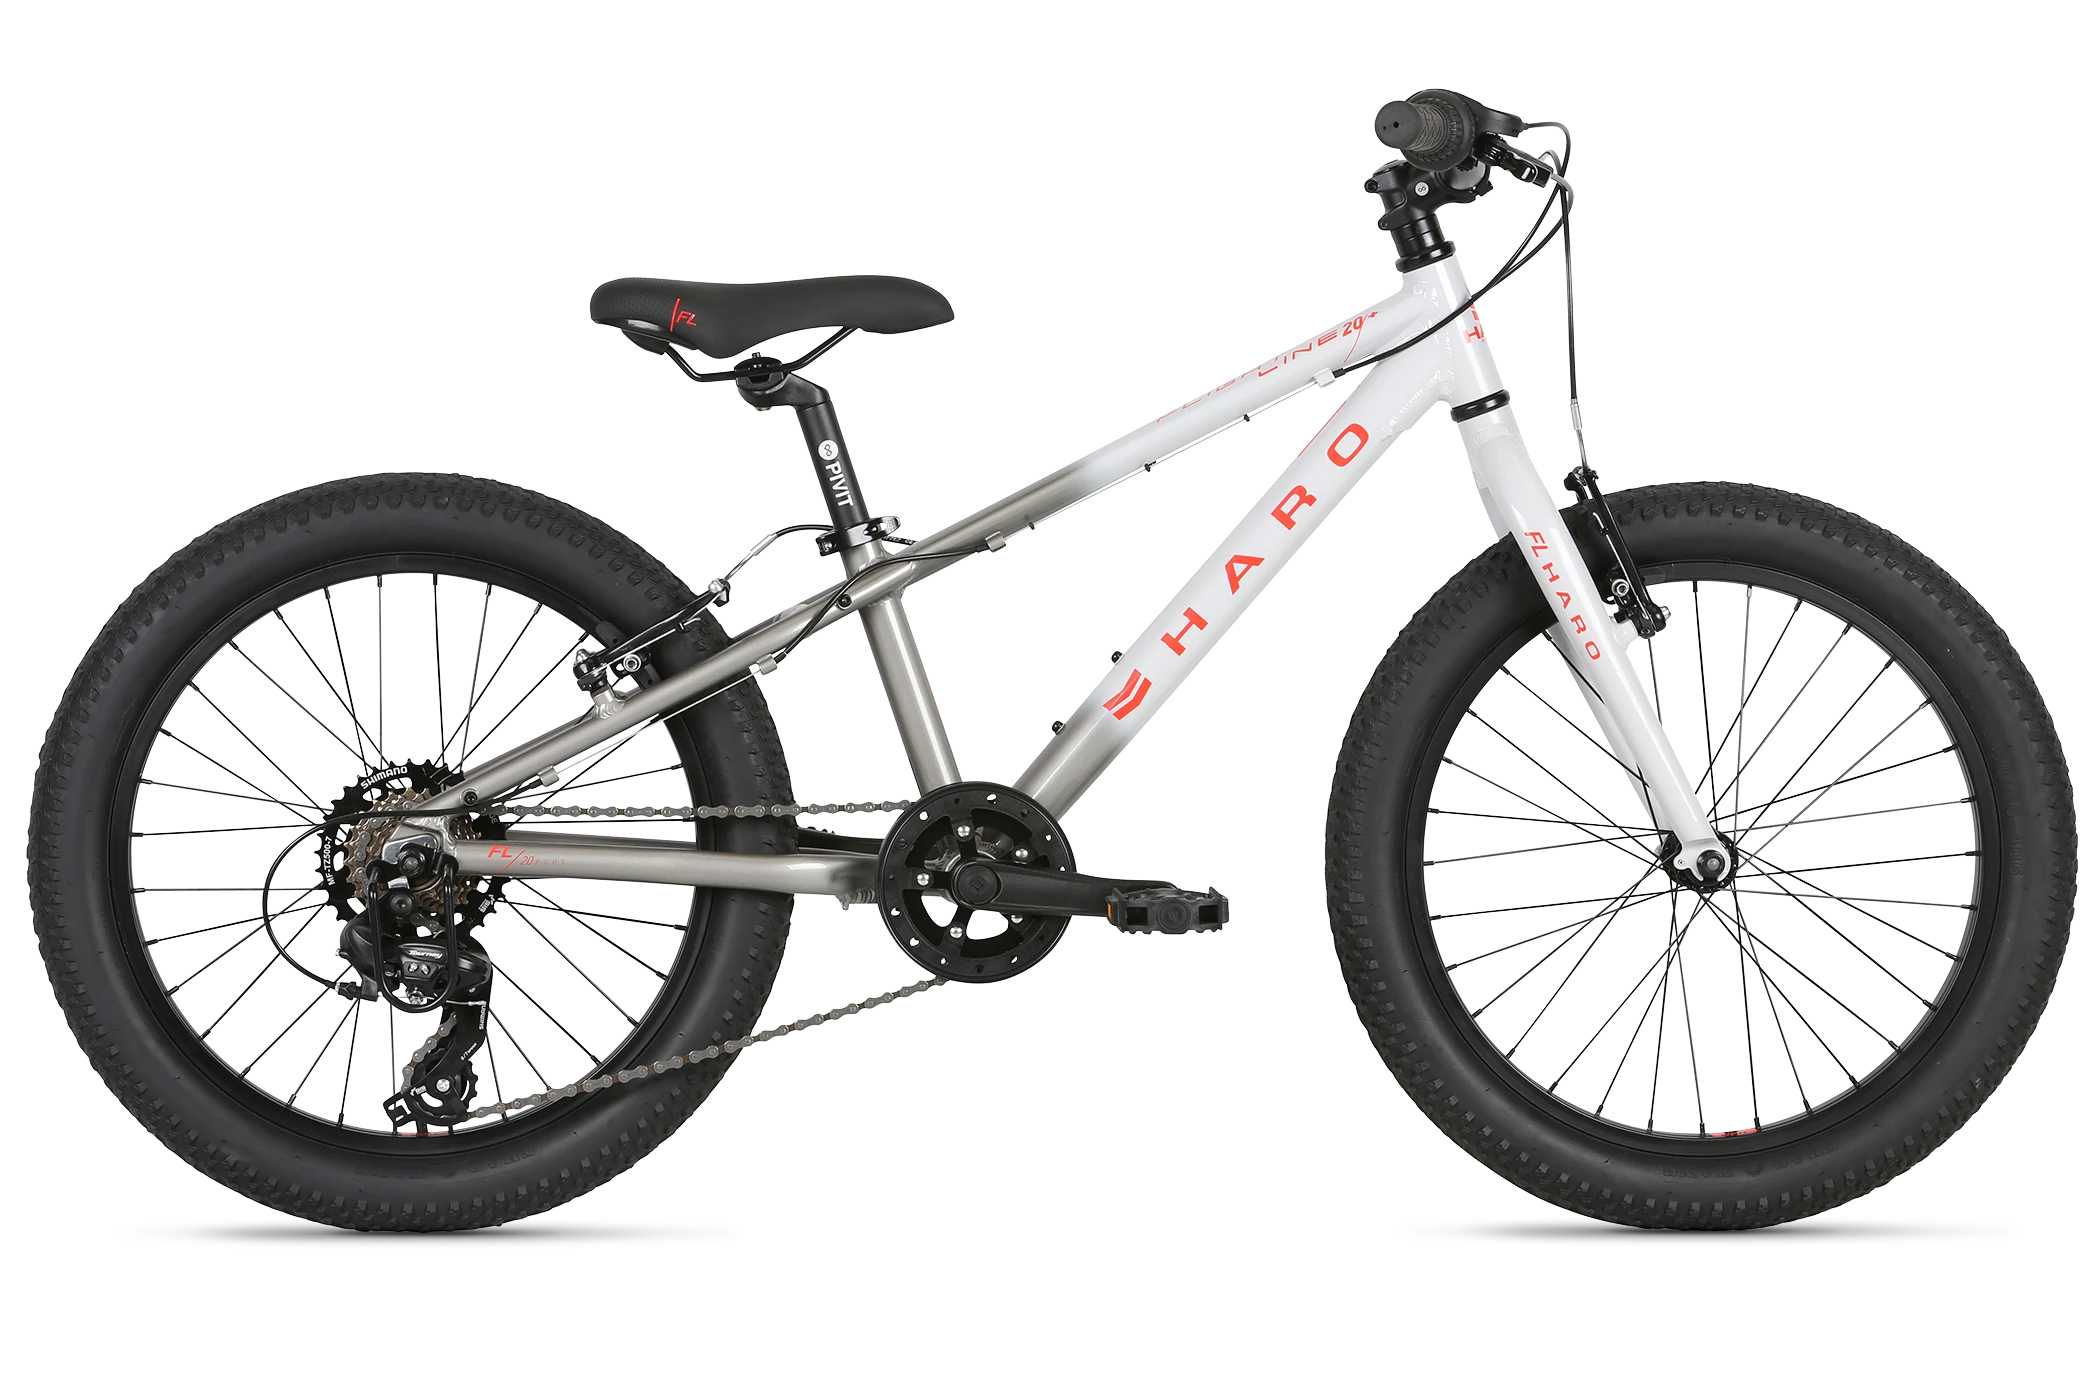 Детский велосипед Haro Flightline 20 Plus 2021 серый-красный горный велосипед altair haro flightline one 29 год 2021 серебристый ростовка 18